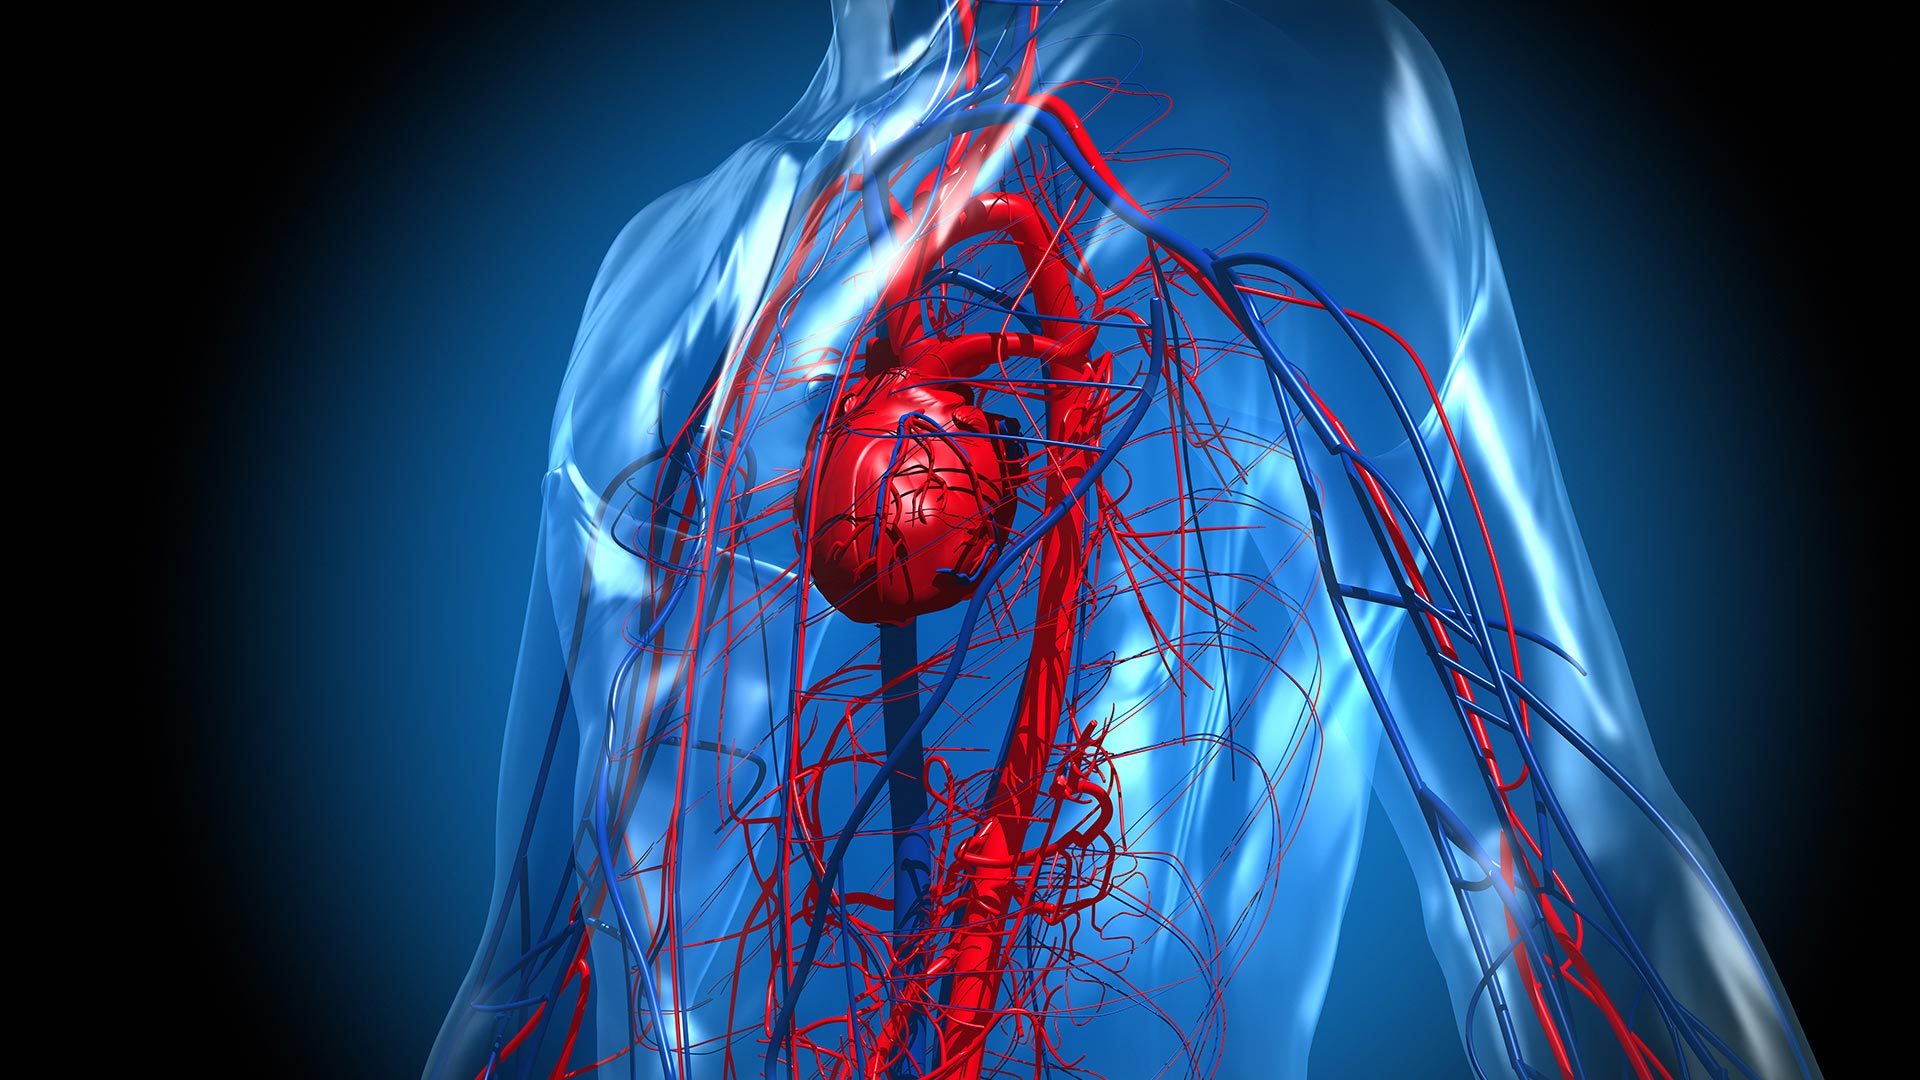 La enfermedad cardiovascular aumentó después del COVID-19, principalmente por embolia pulmonar, arritmias auriculares y trombosis venosa (Getty)